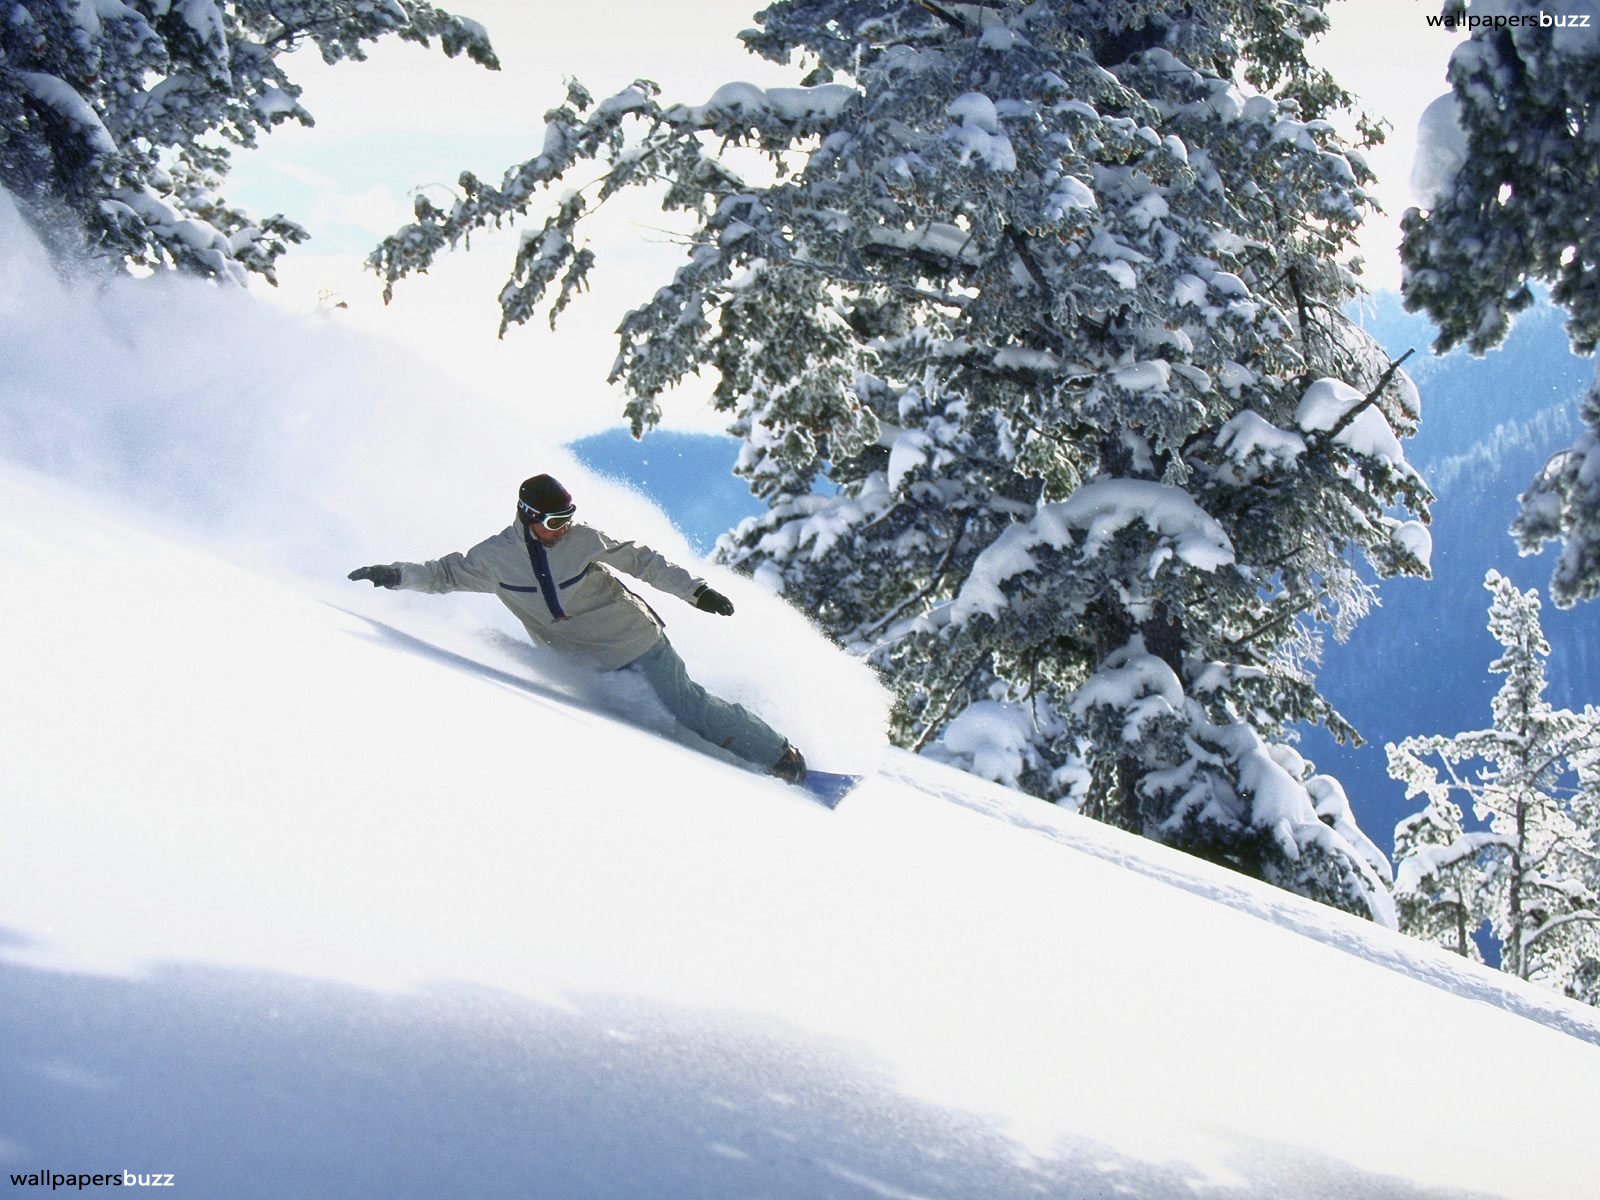 Snowboarding at an angle HD Wallpaper